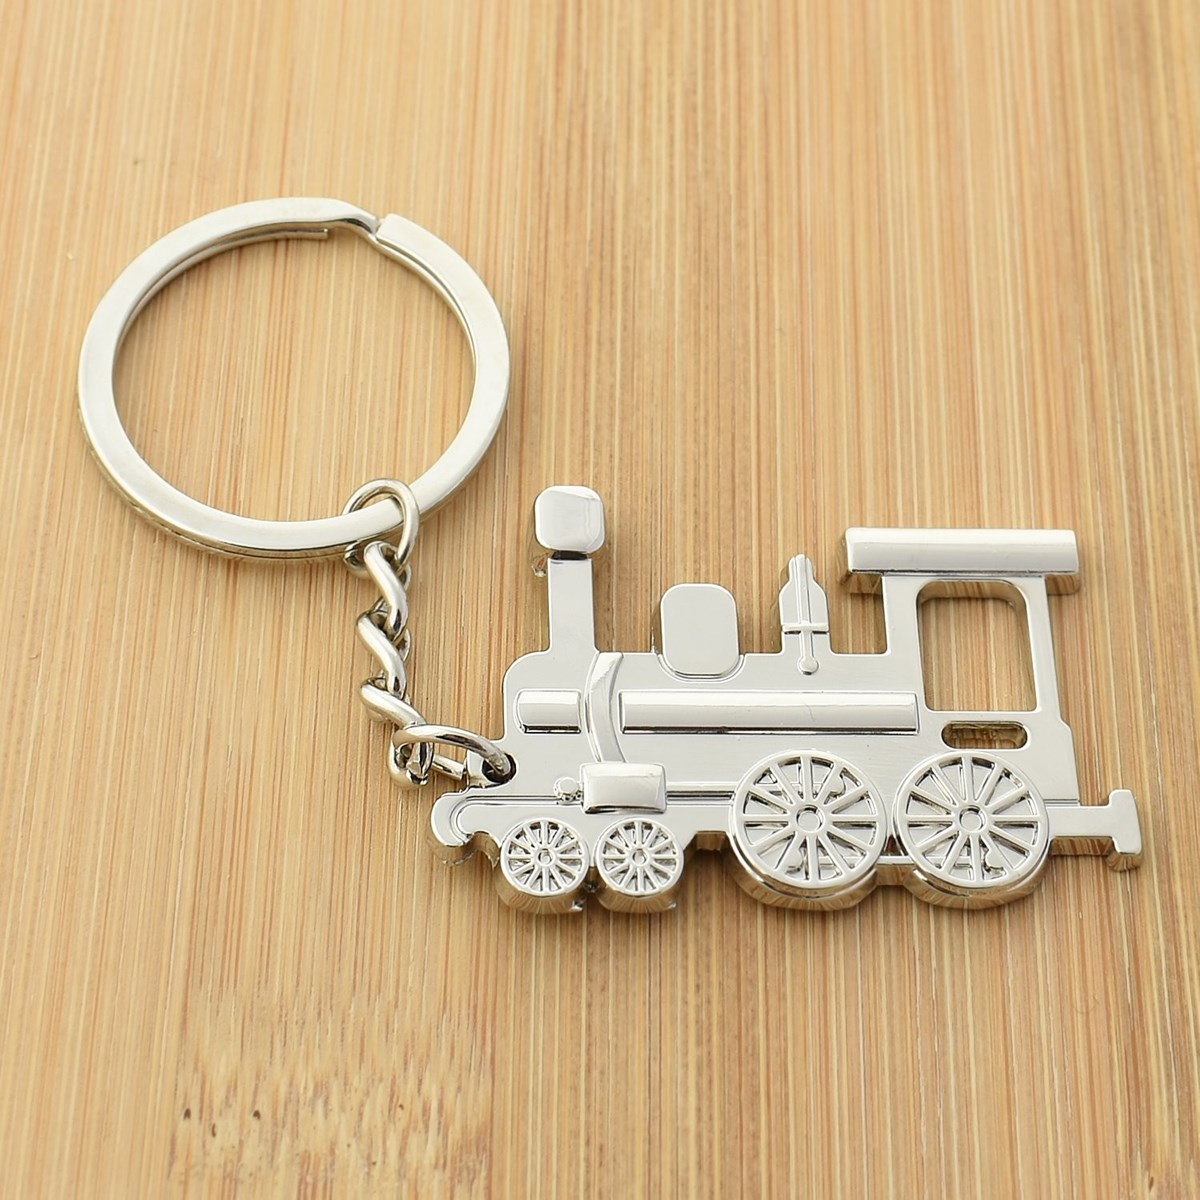 Porte-clés train locomotive à vapeur argenté - vue 2